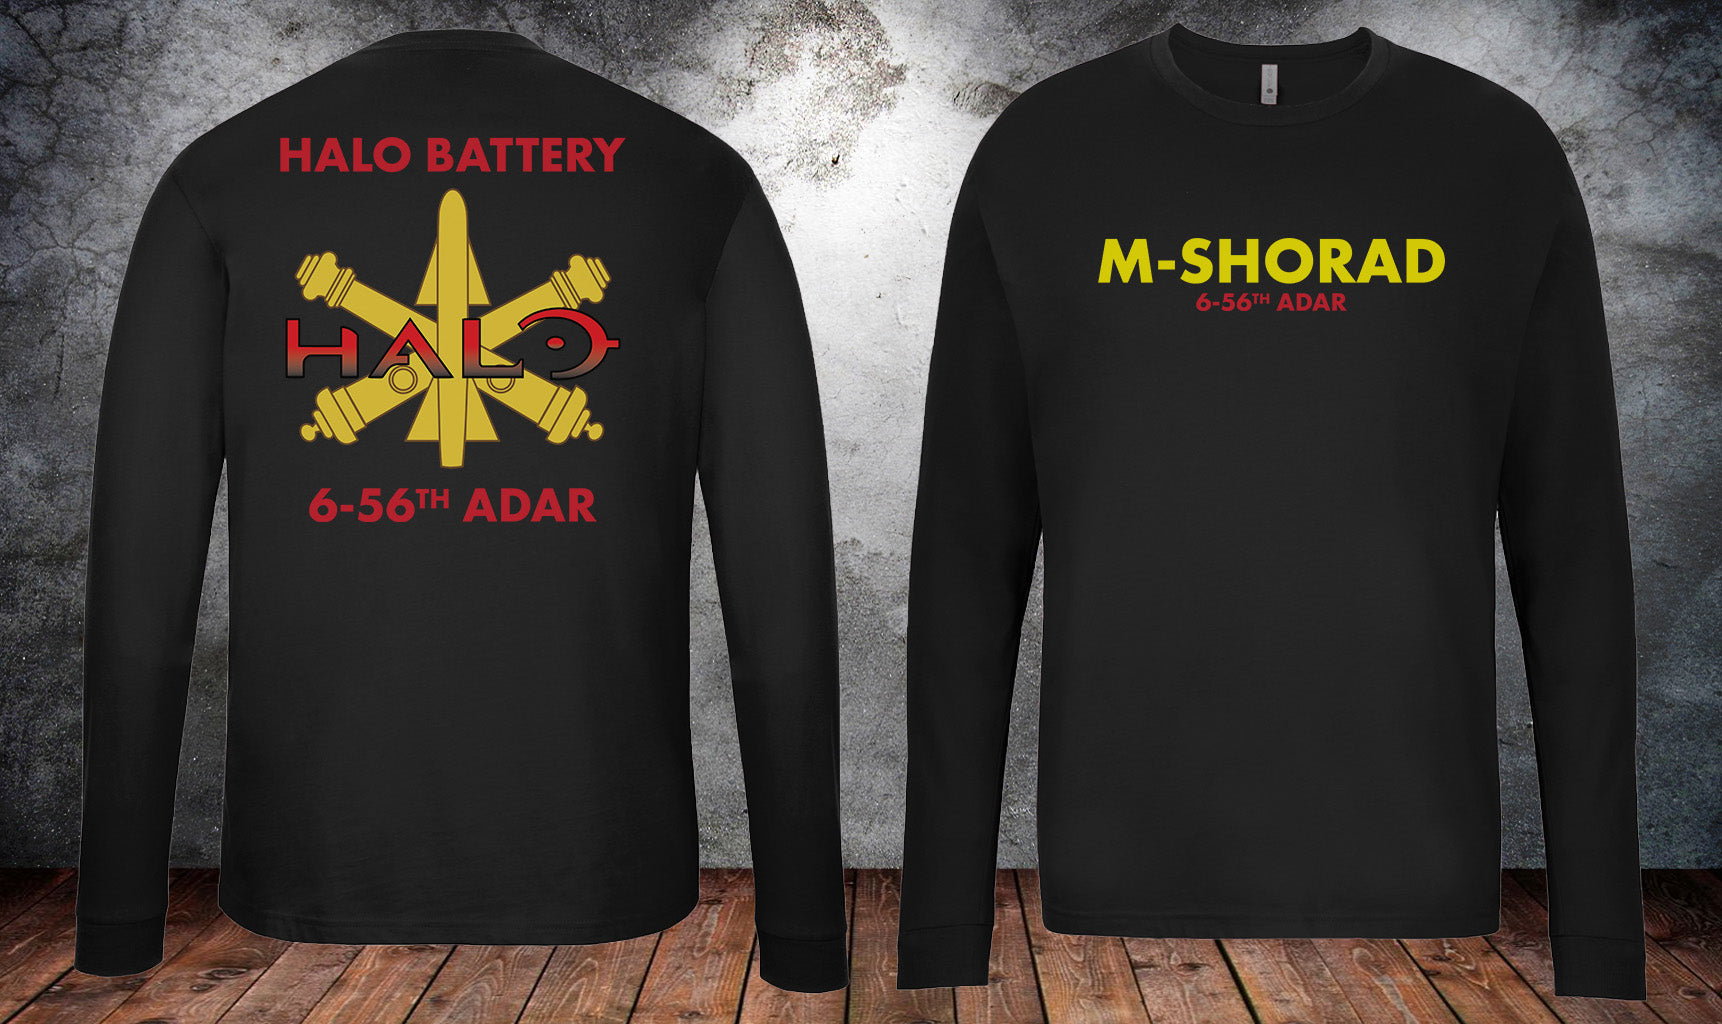 6-56 ADAR Battery Long Sleeve PT Shirt